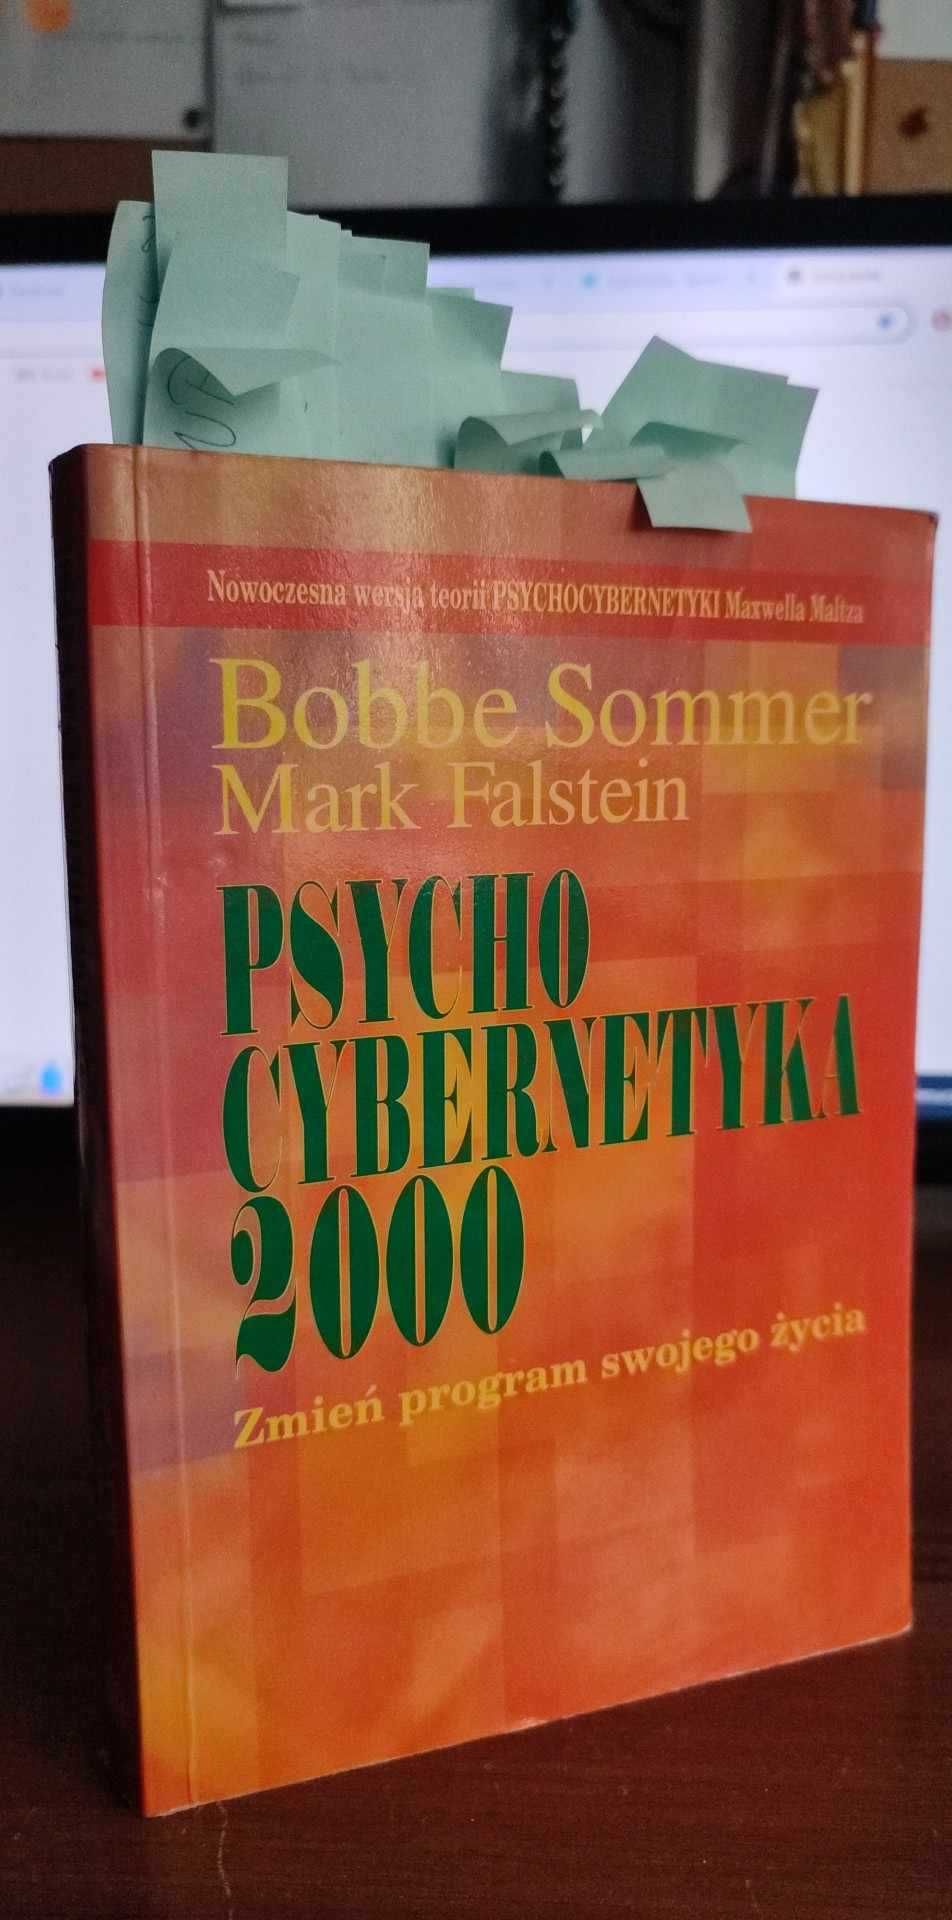 Bobbe Sommer, Mark Falstein - Psychocybernetyka 2000